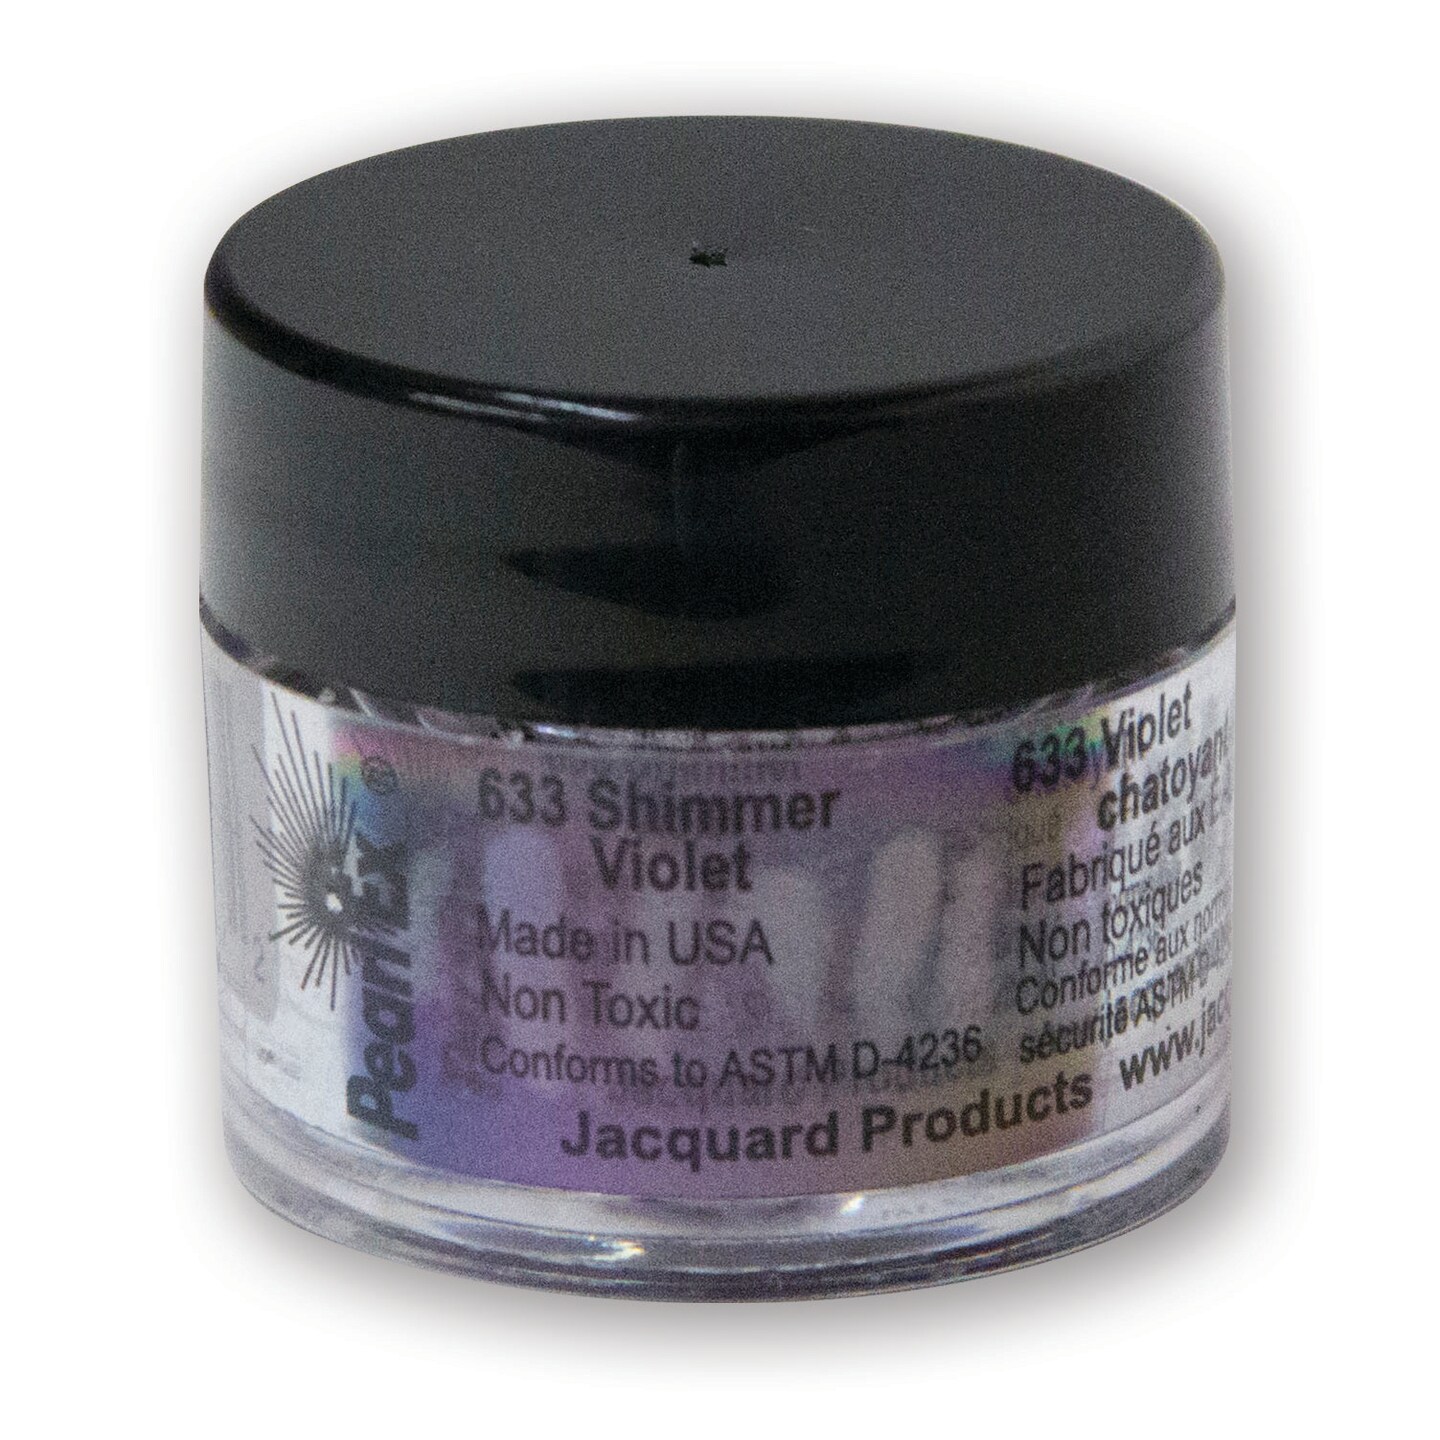 Jacquard Pearl Ex Pigment, 3g, Shimmer Violet